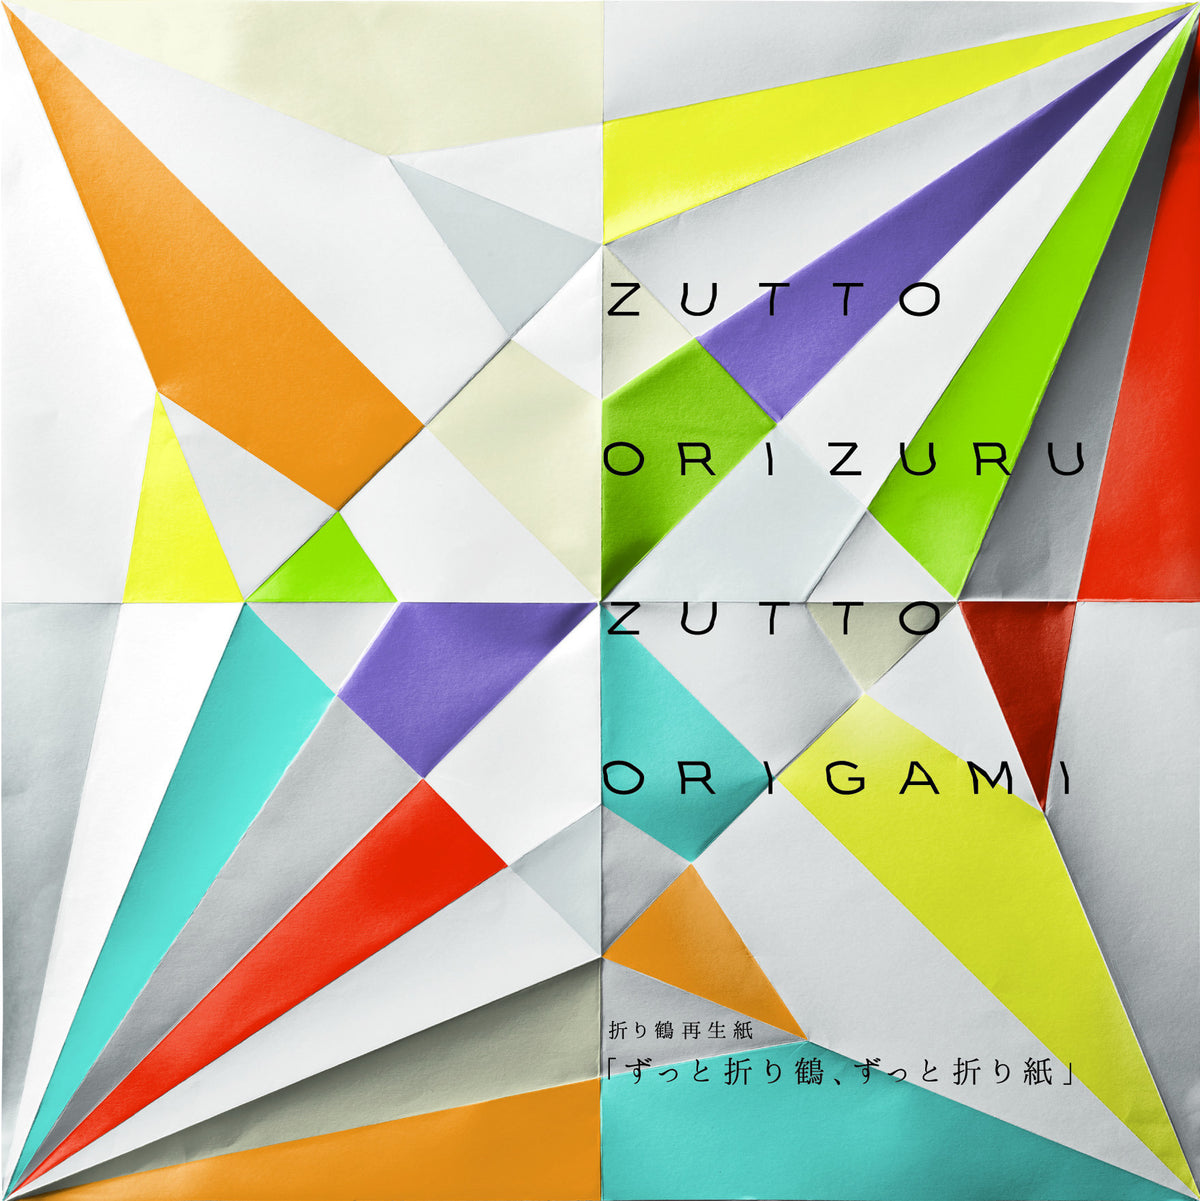 Zutto Origami Project